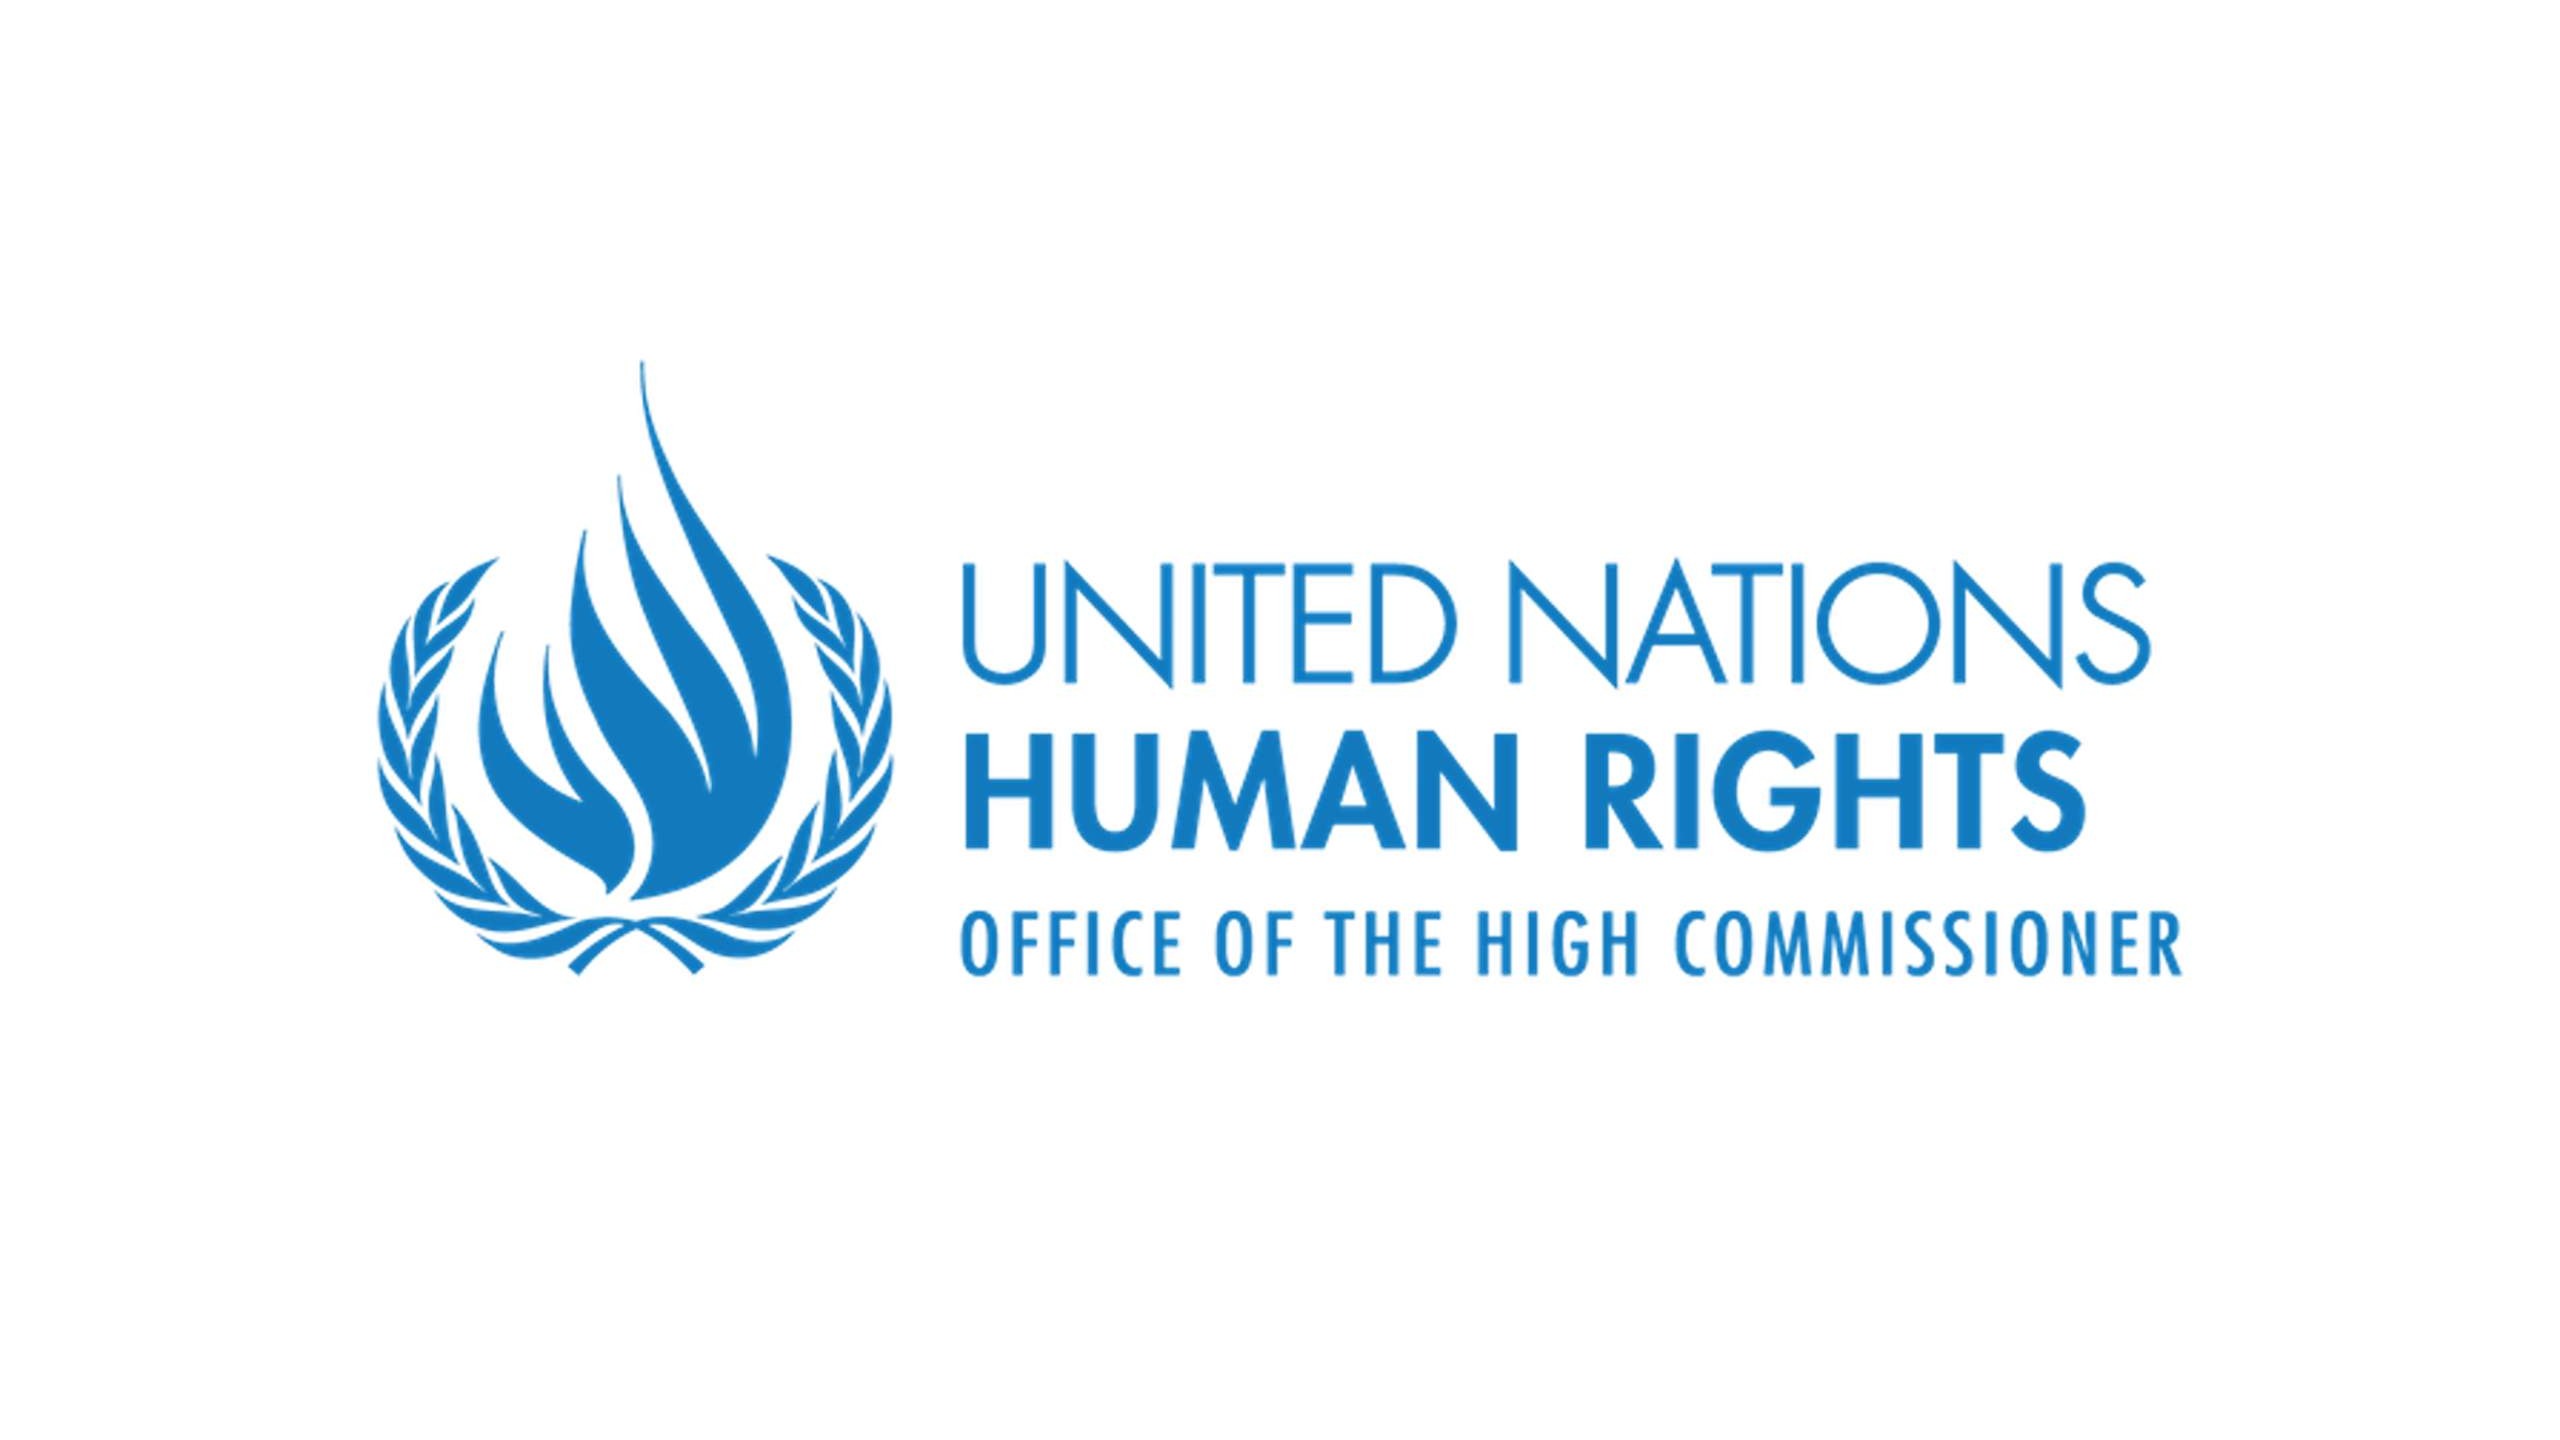 UN osudio incidente u Bosni i Hercegovini i Srbiji i pozvao na sprječavanje njihovog ponavljanja